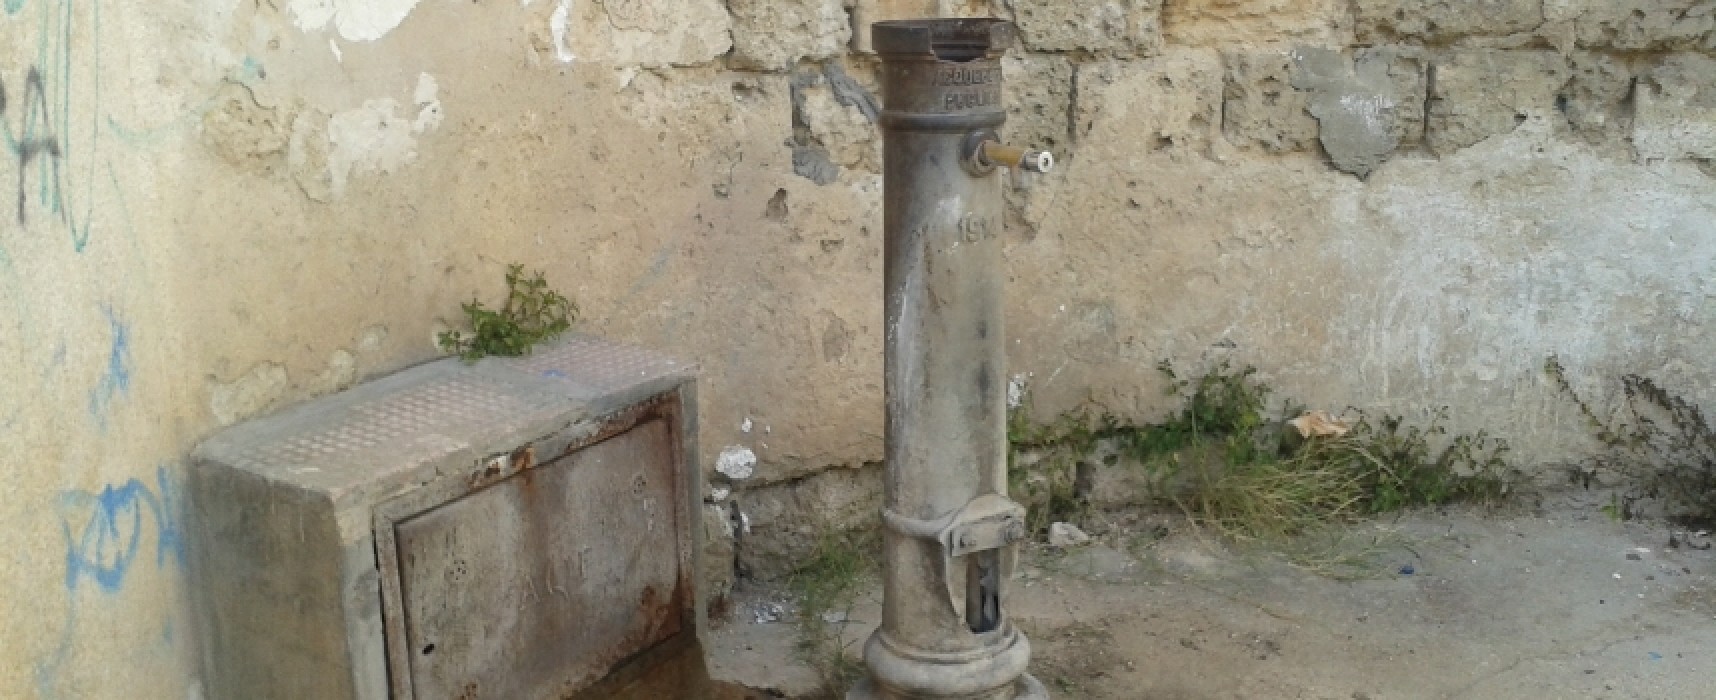 Dopo la bonifica dell’AQP la fontana di via Vecchia Corato può essere riattivata